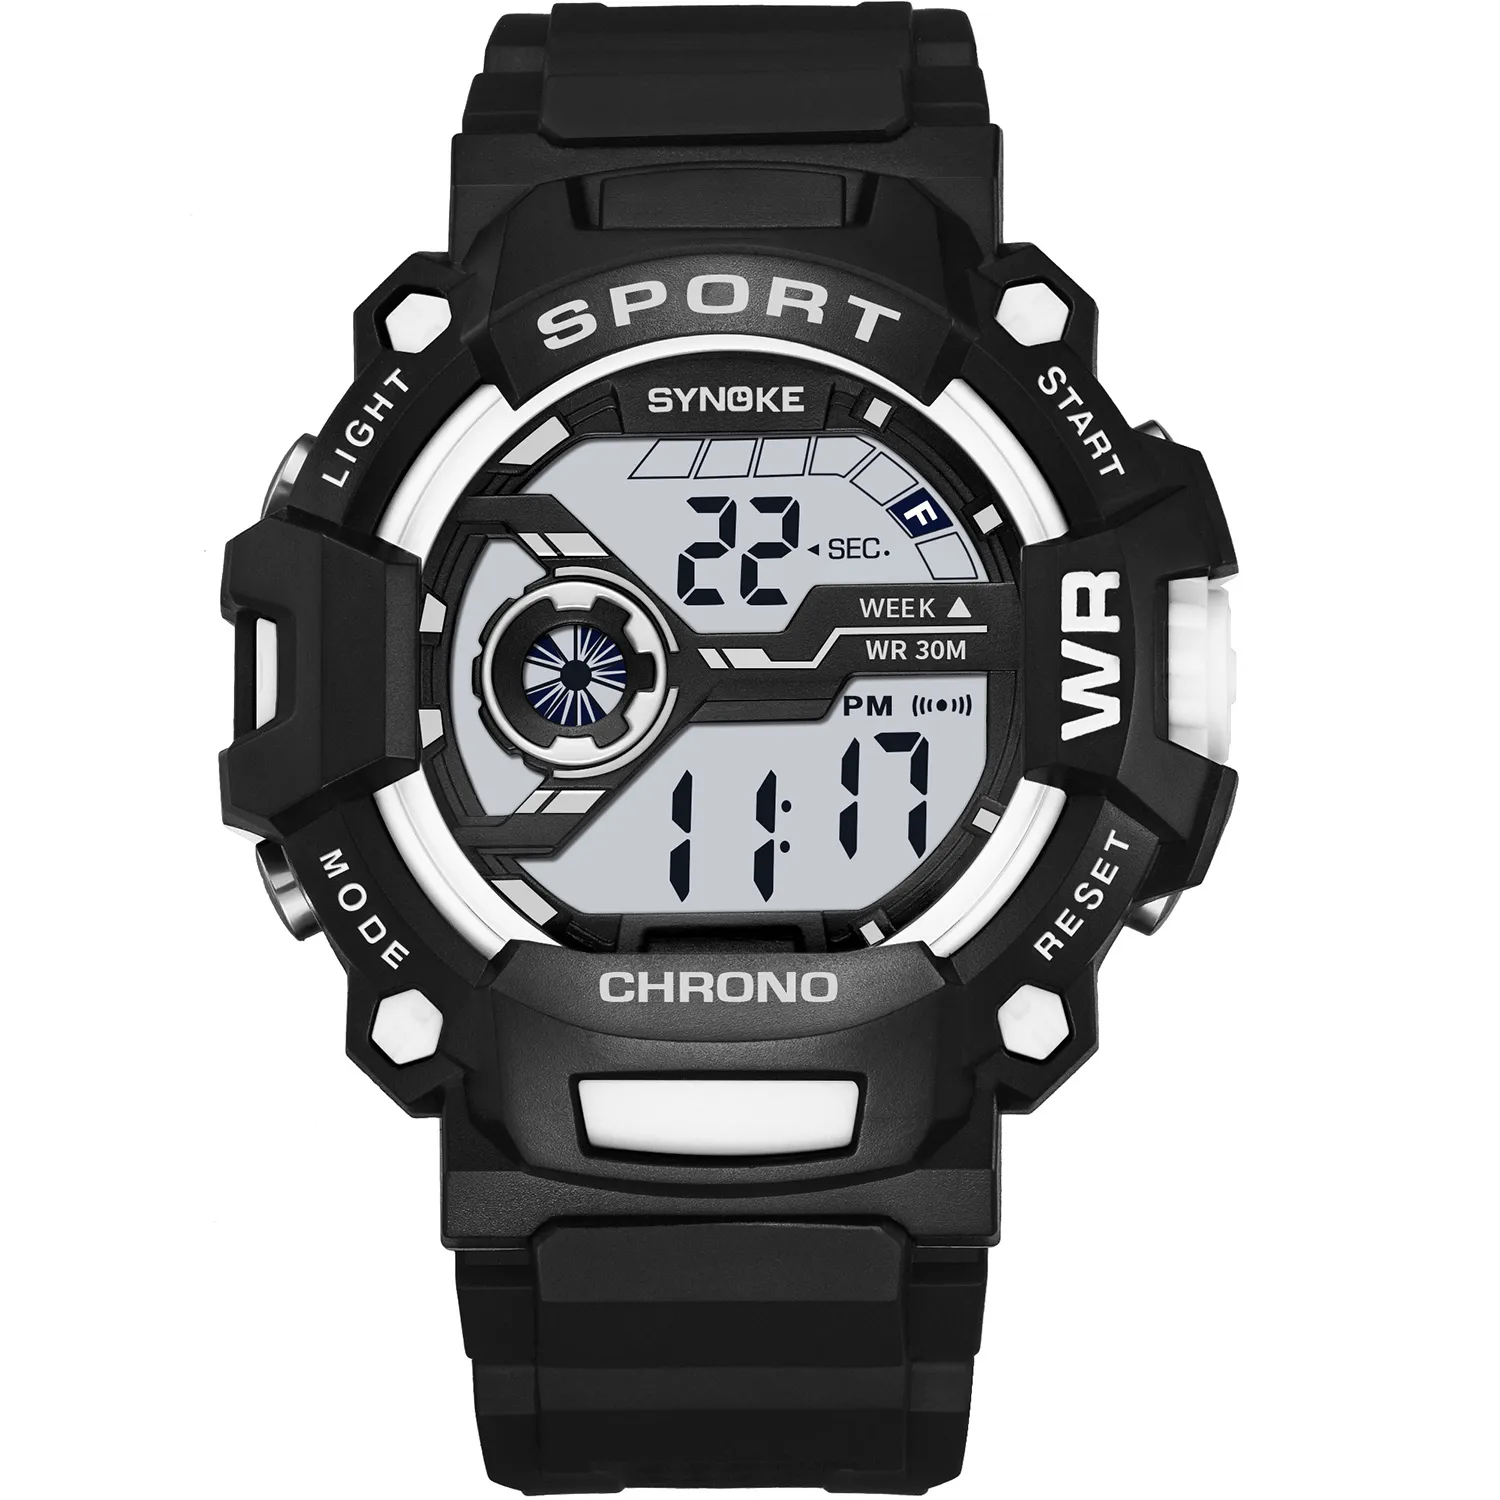 PANARS mode hommes montre numérique étanche Sports de plein air hommes Sport montres LED horloge électronique pour Men302R